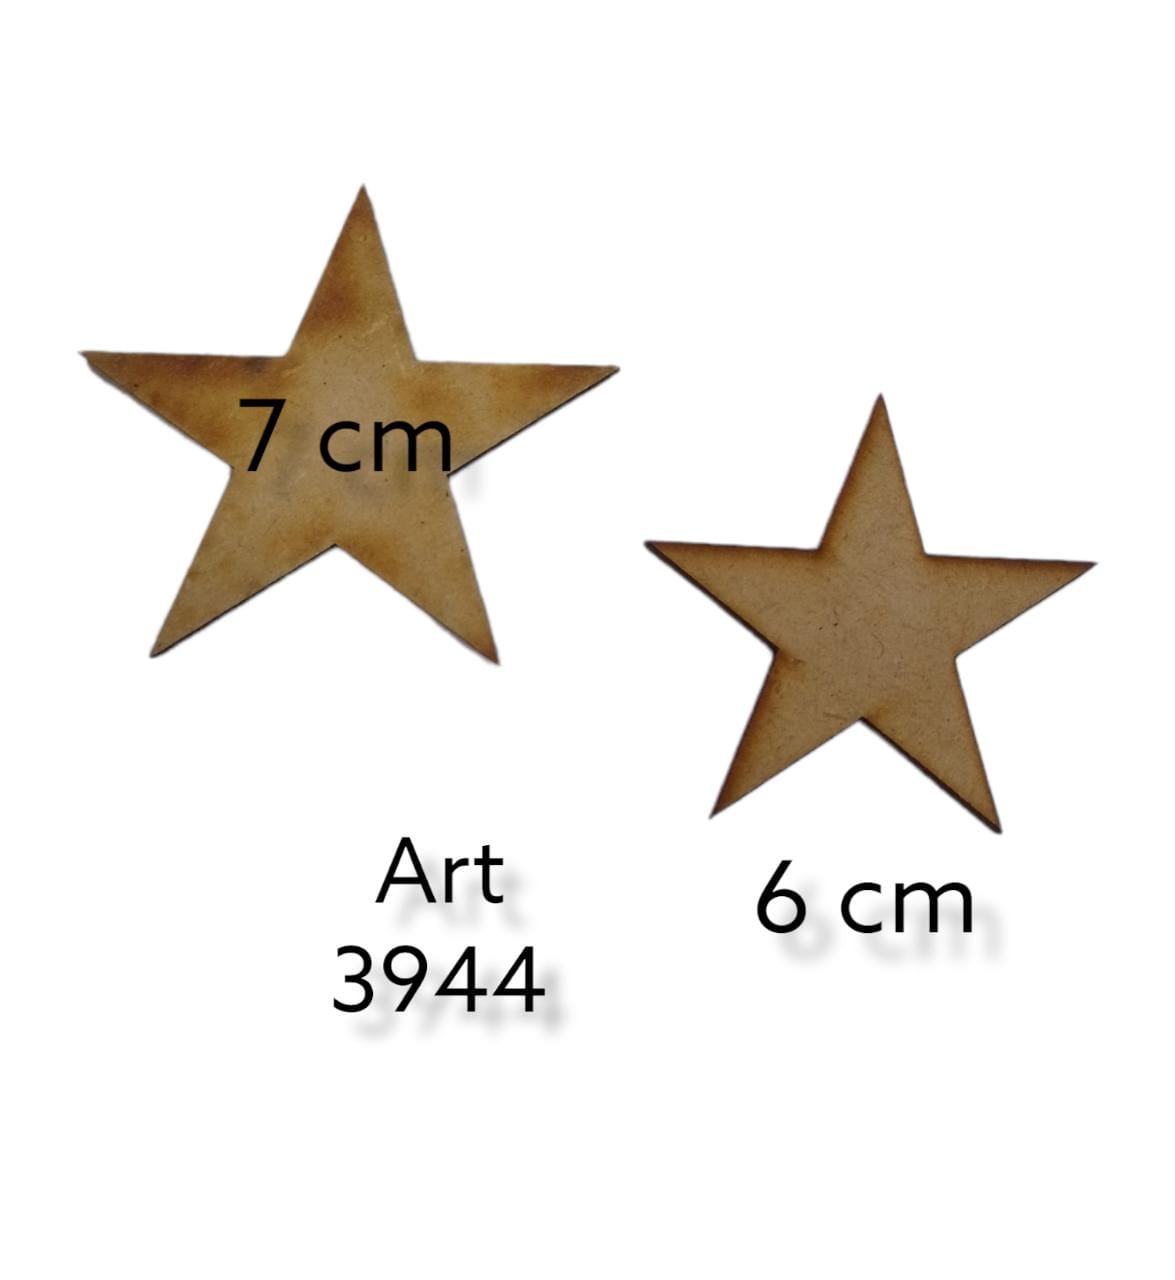 Estrella 7cm  o  6.cm 